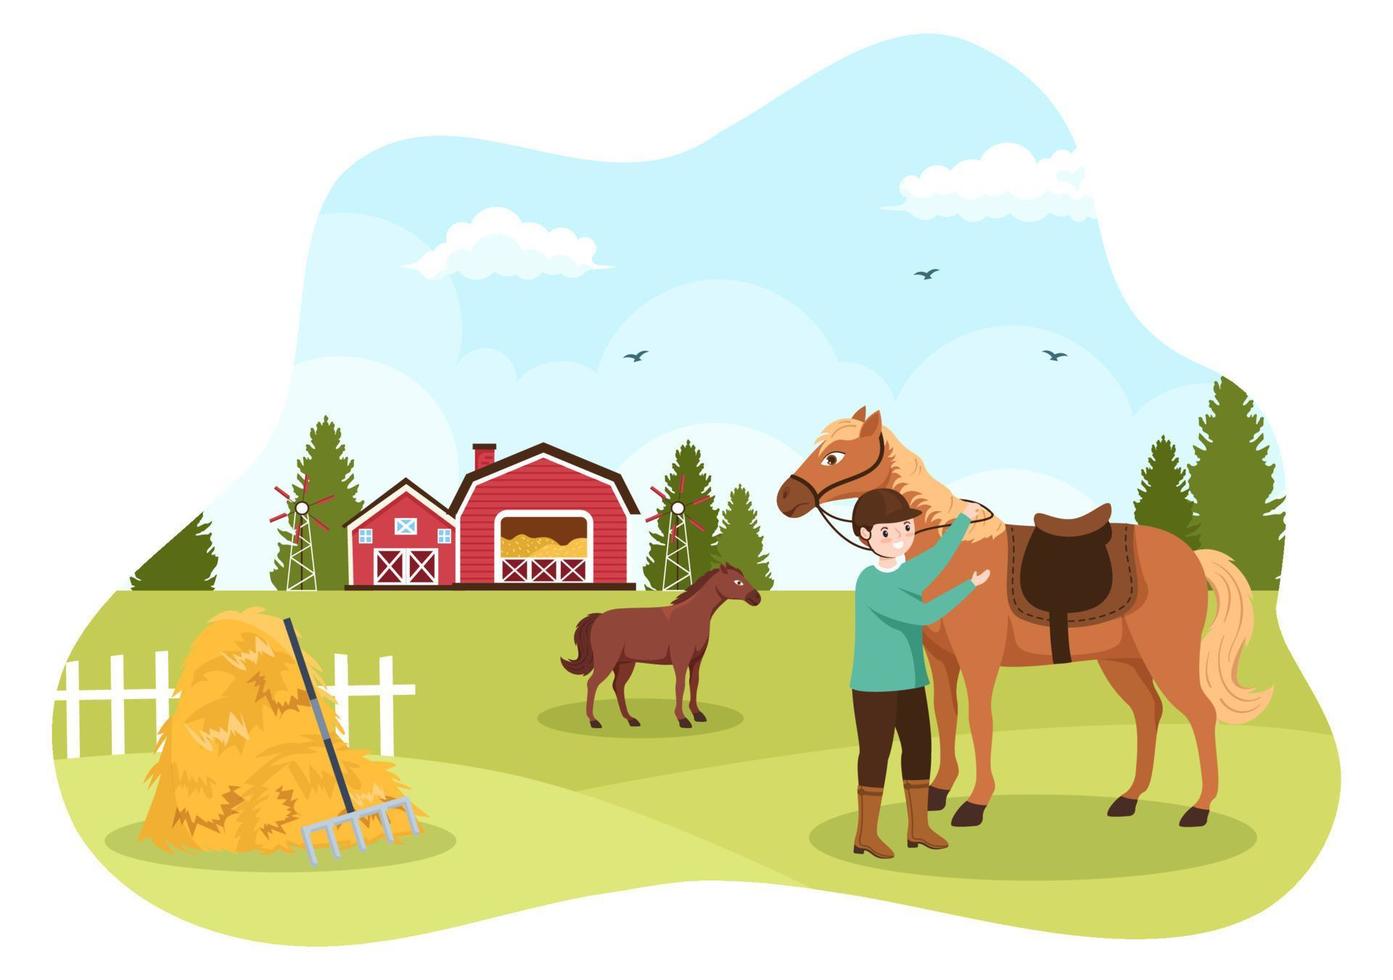 ilustración de dibujos animados de equitación con un personaje de gente linda practicando paseos a caballo o deportes ecuestres en el campo verde vector